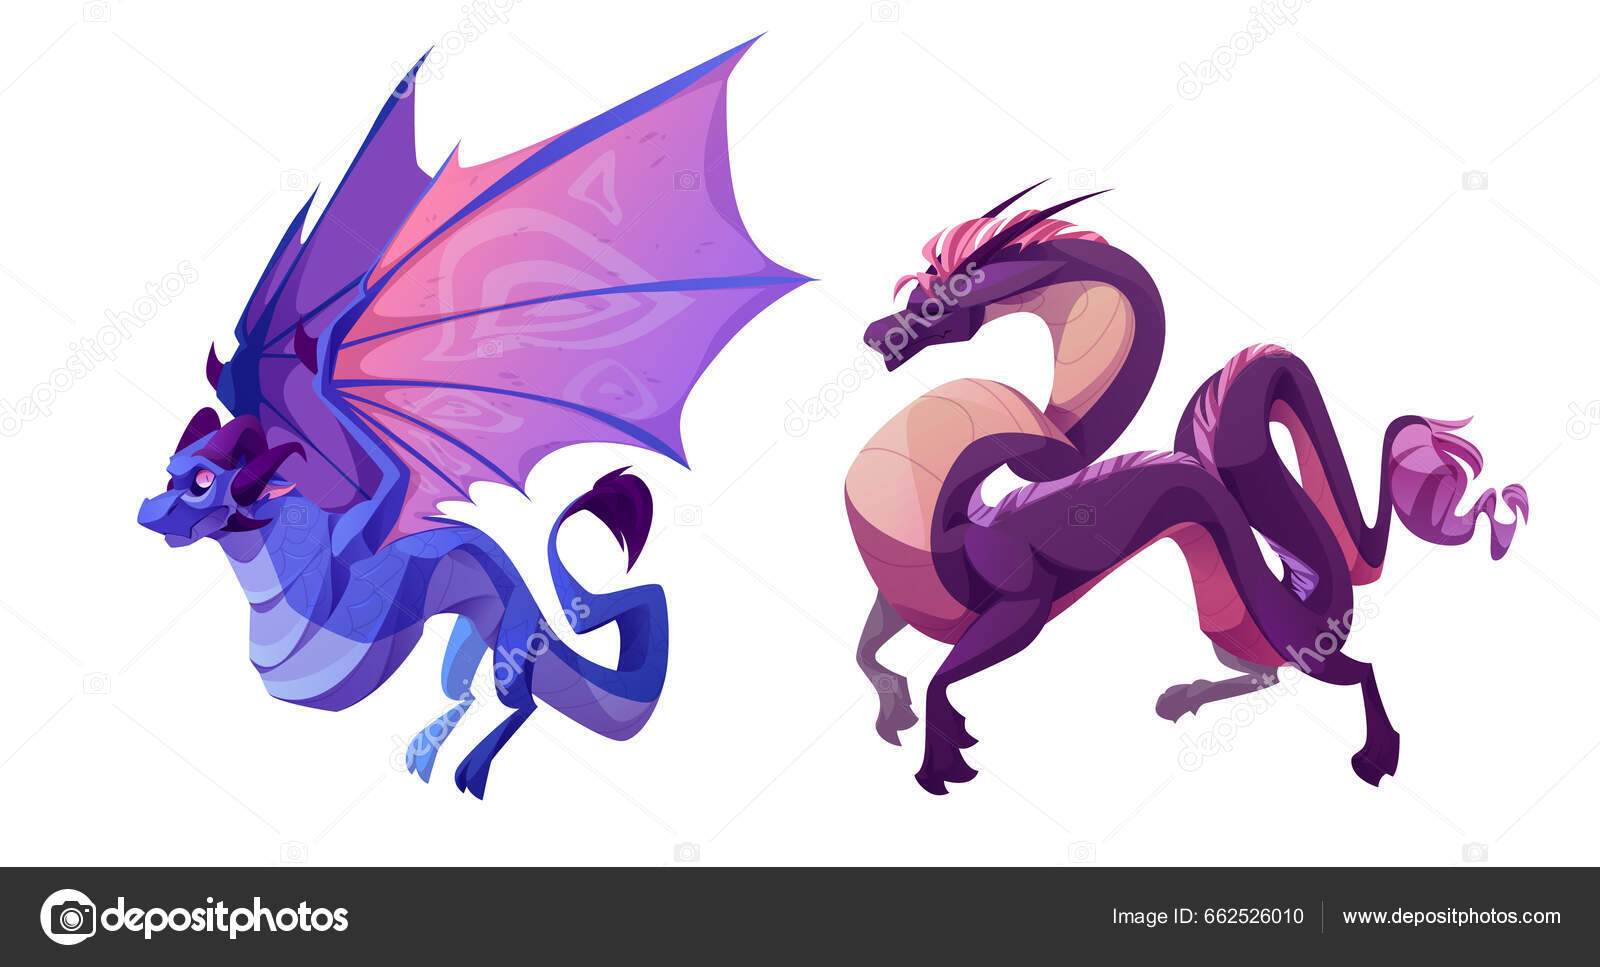 Design de avatares de jogos de personagens de animais redondos